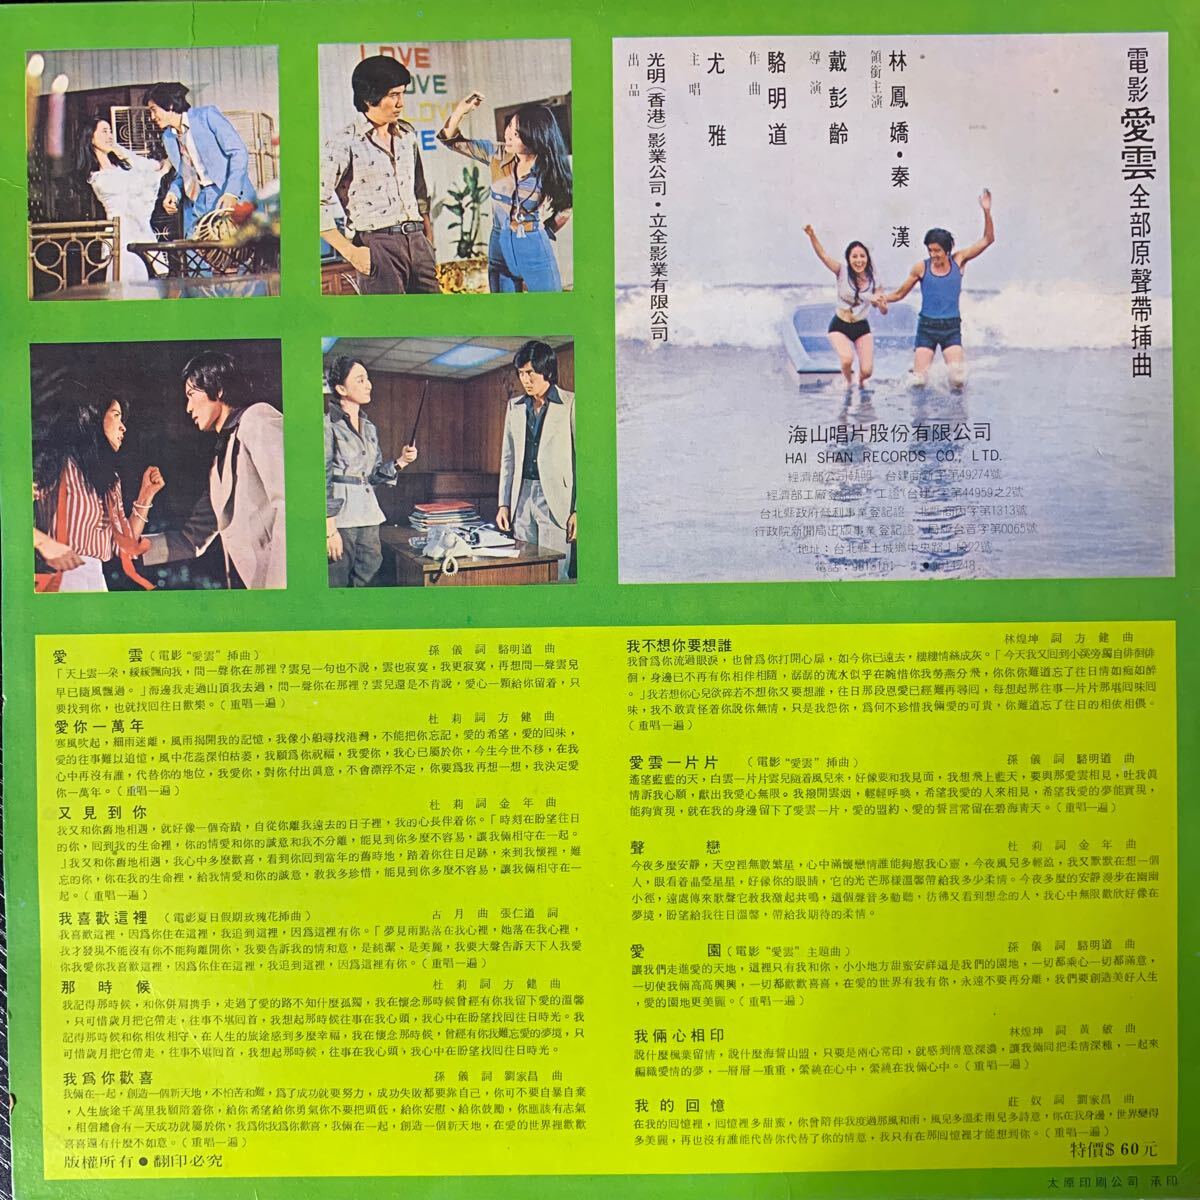 尤雅 愛雲 海山唱片 Haishan Records LS4051 レコード Vinyl 台湾盤 Taiwan 台灣の画像2